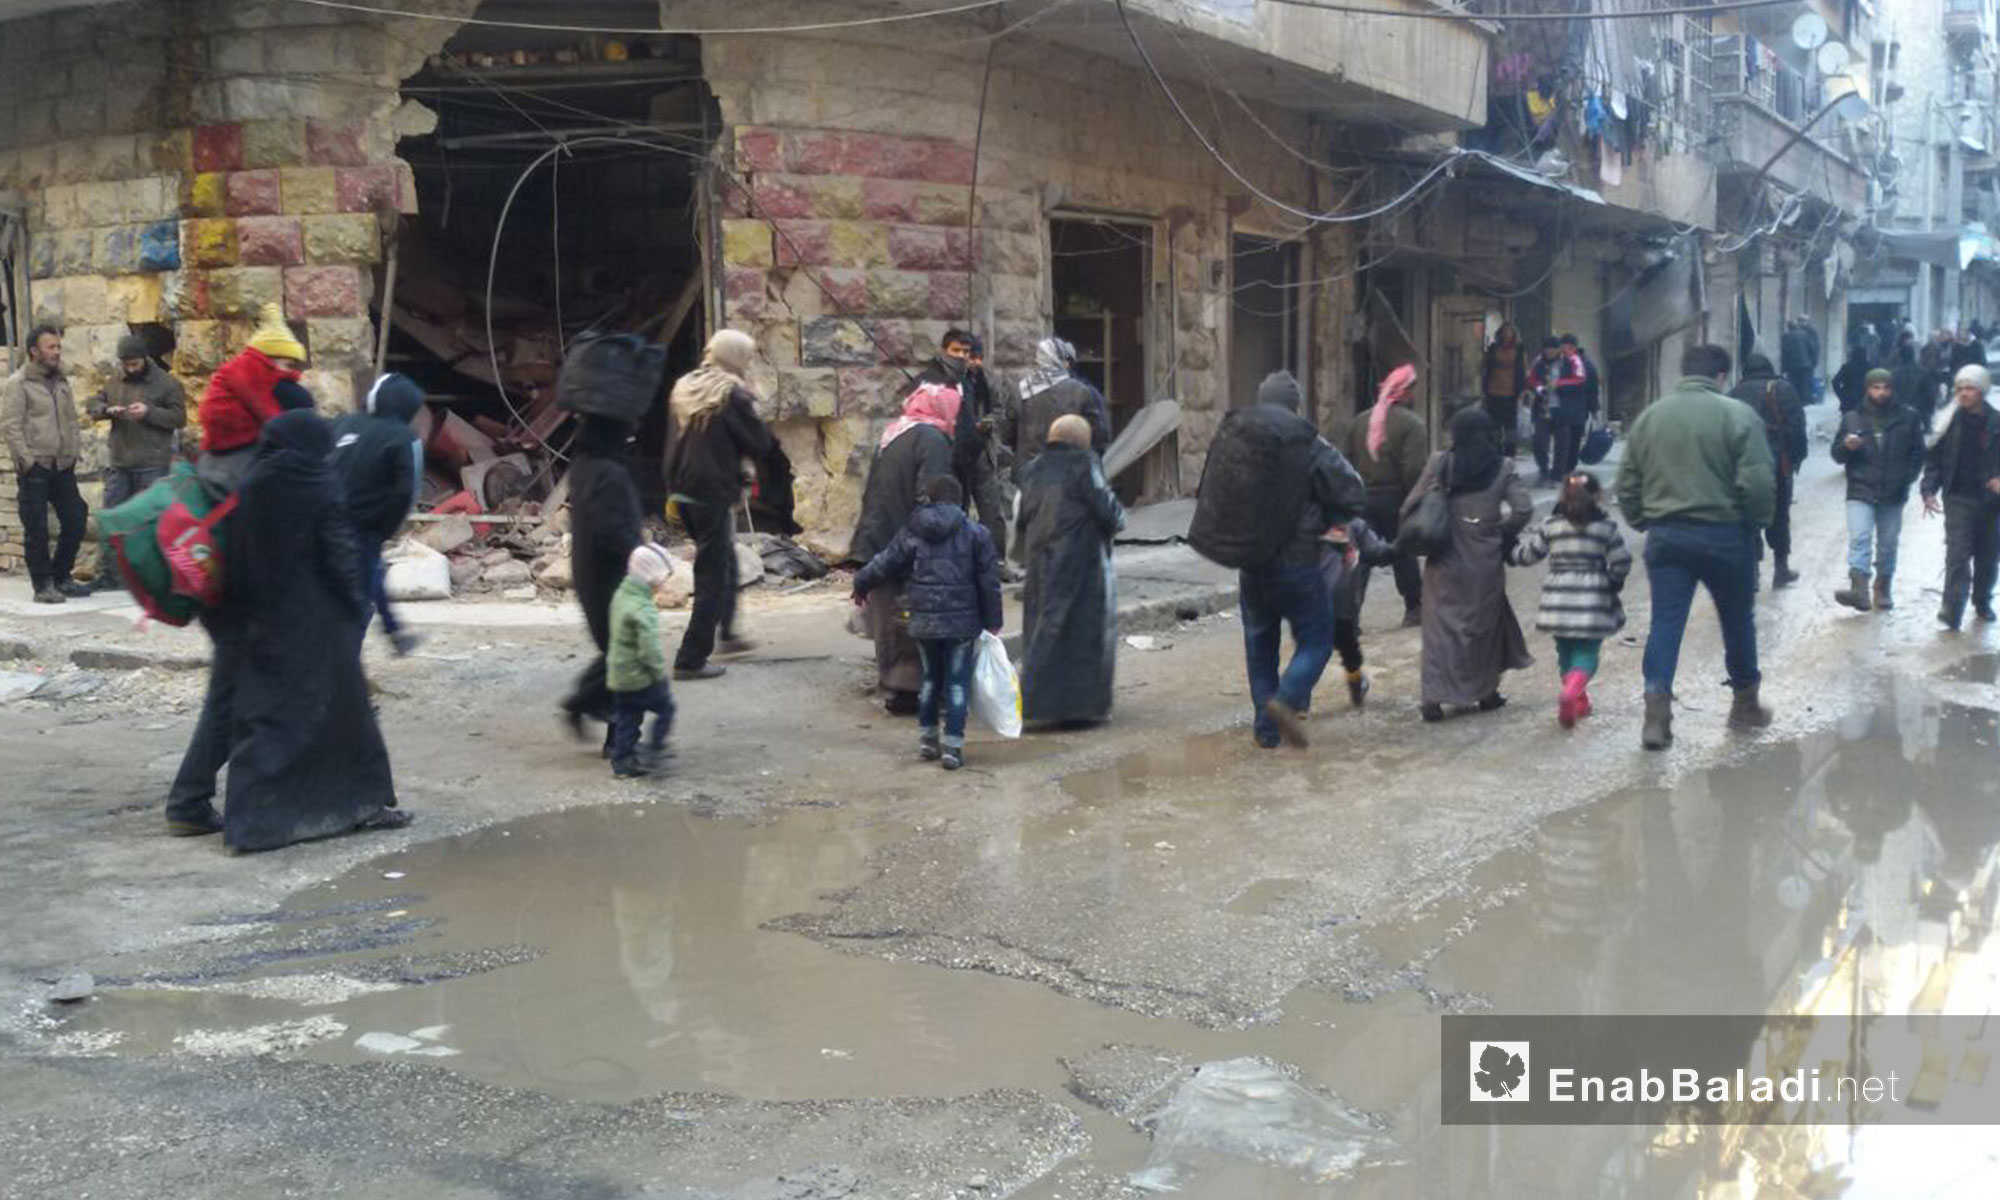  خروج المدنيين والجرحى باتجاه معبر الراموسة بانتظار إجلائهم خارج مدينة حلب - 15 كانون الأول 2016 (عنب بلدي)